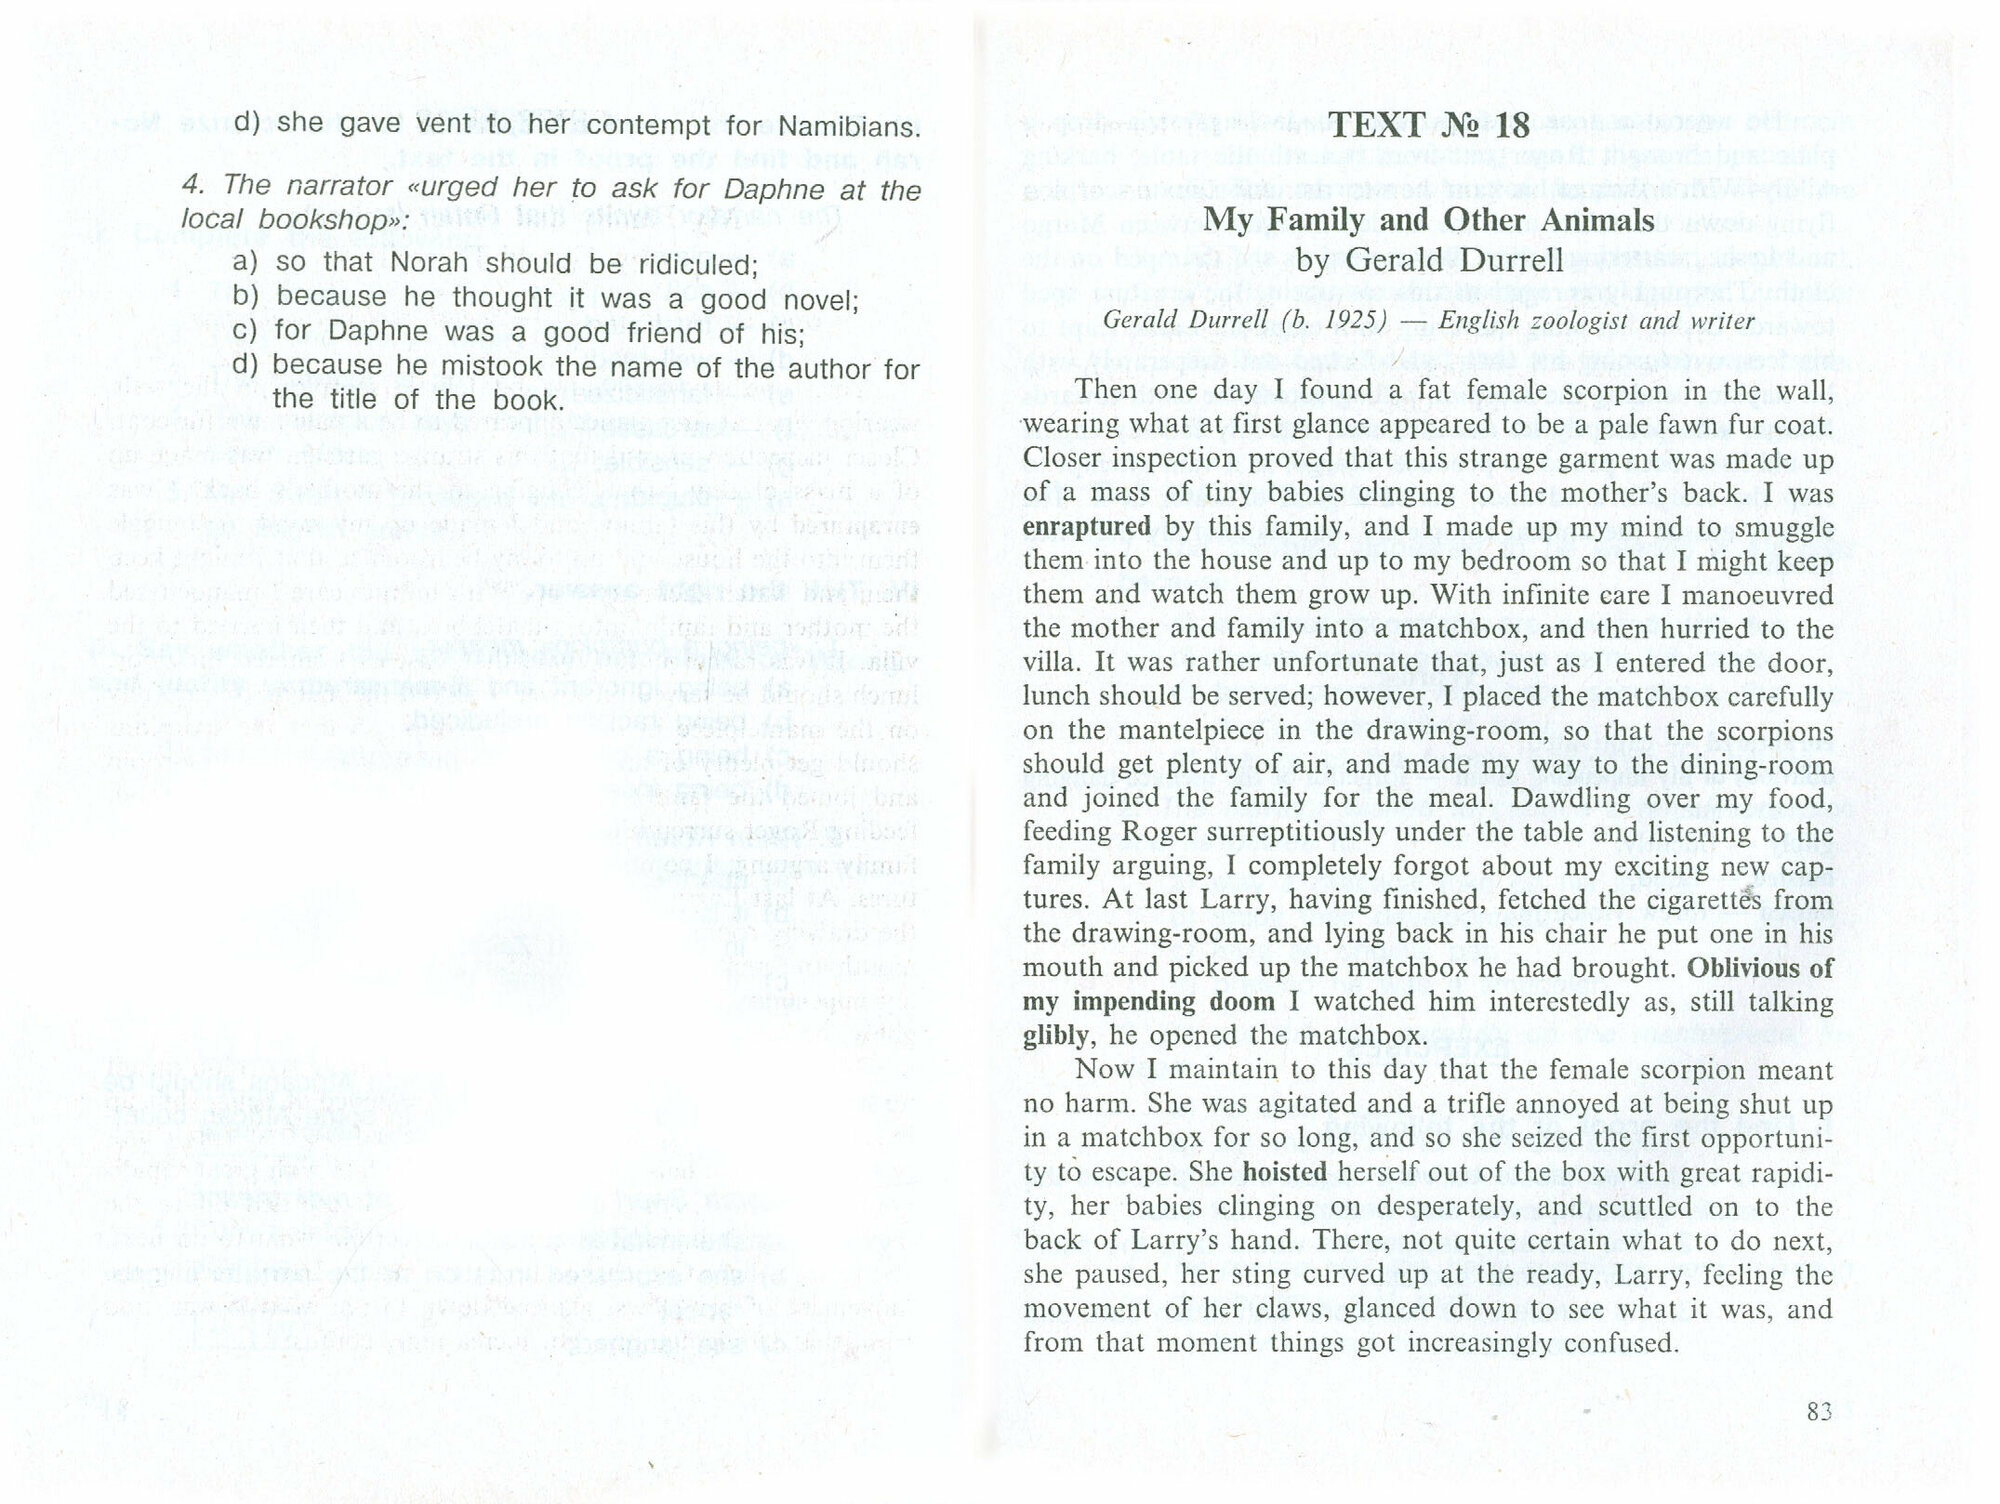 Тесты для проверки понимания текста. Практическое пособие по английскому языку для учащихся 9-11 кл. - фото №2